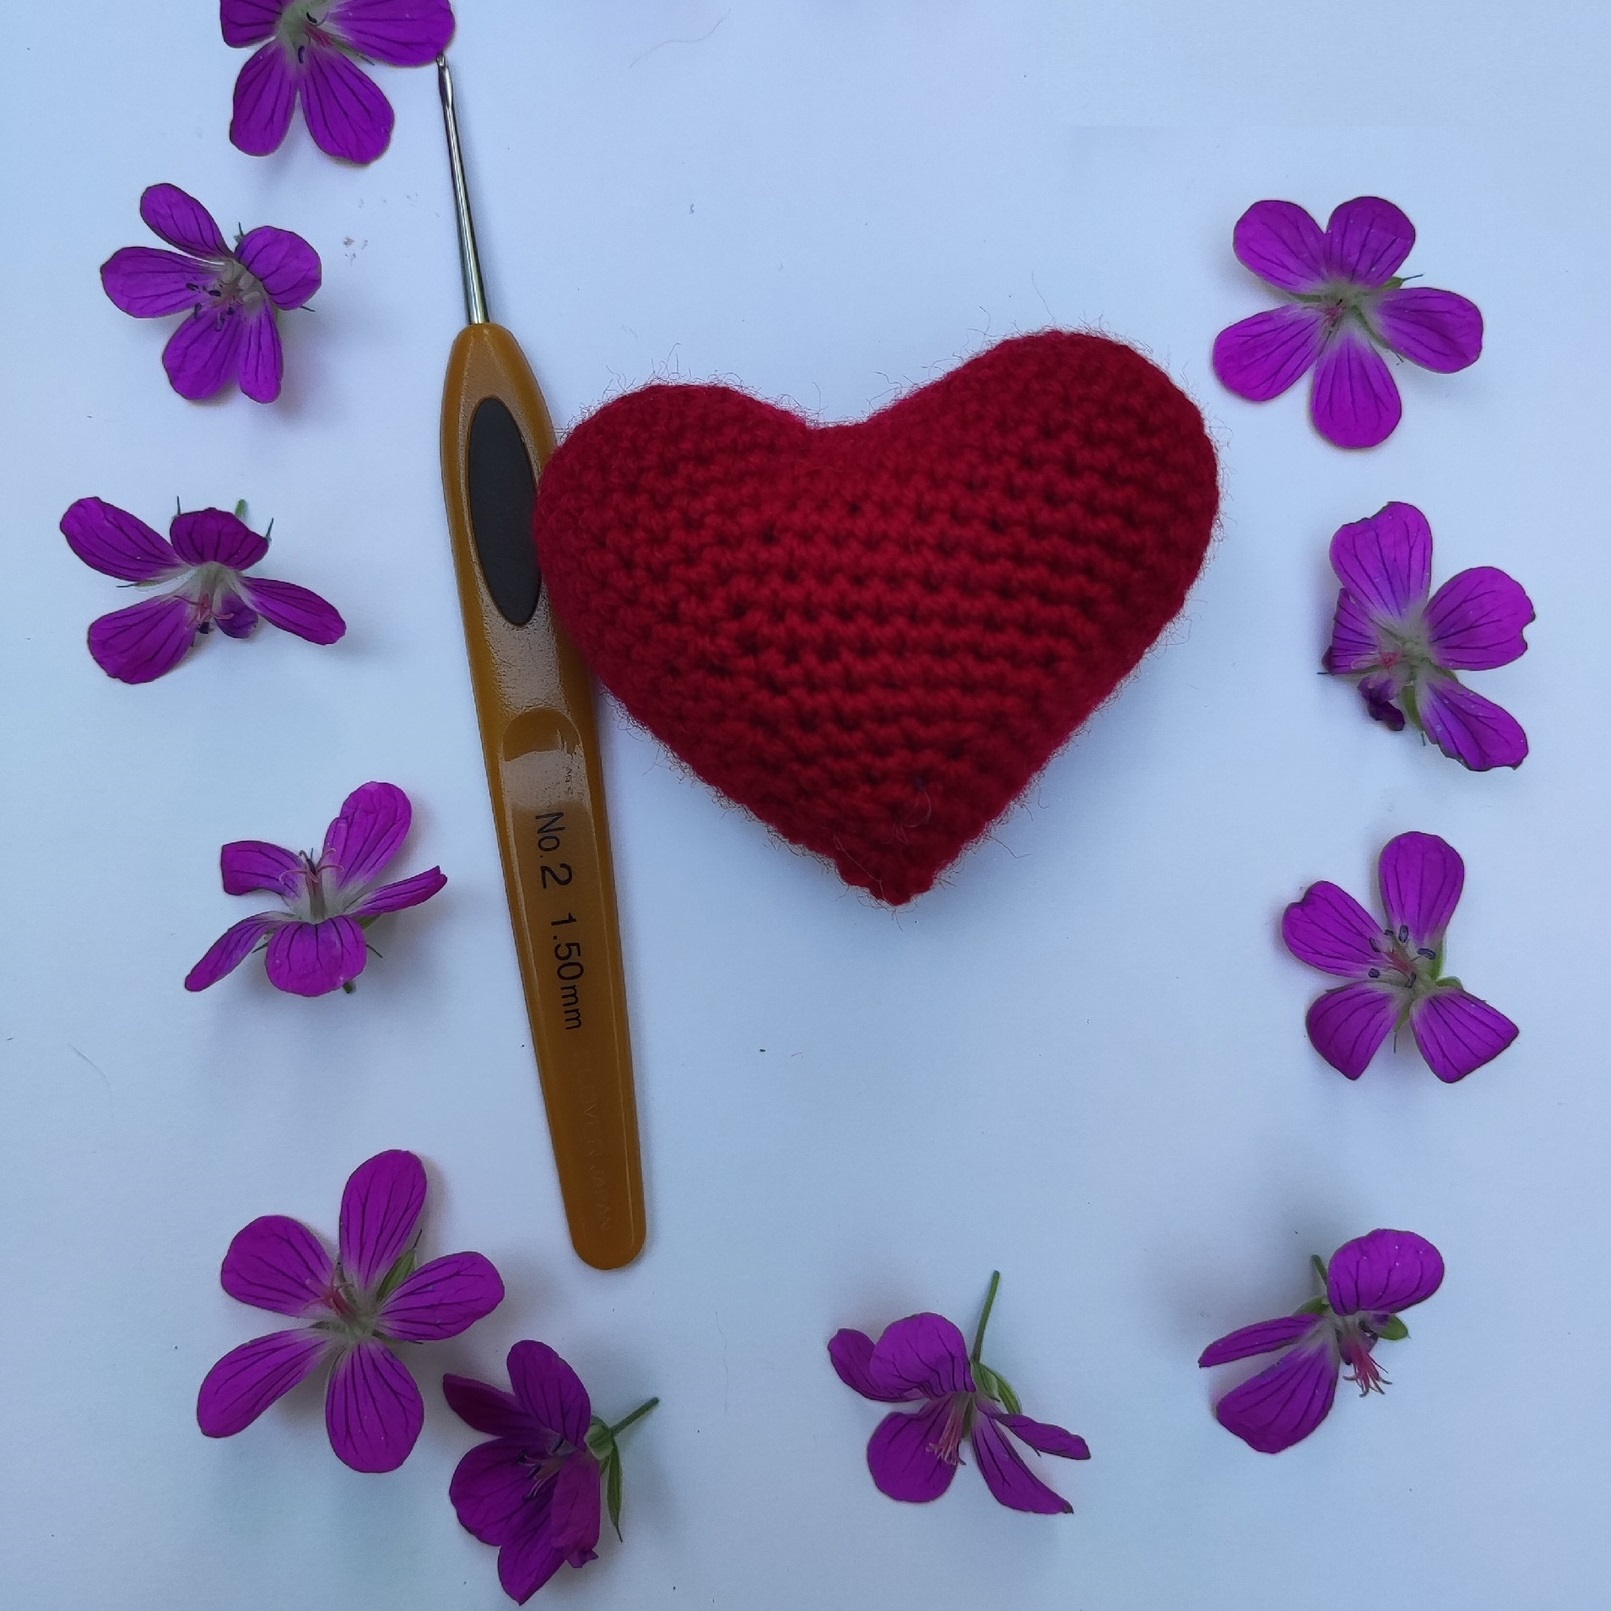 Мастер-класс по вязанию крючком брелочка «Сердце» (для имеющих навыки вязания крючком) 